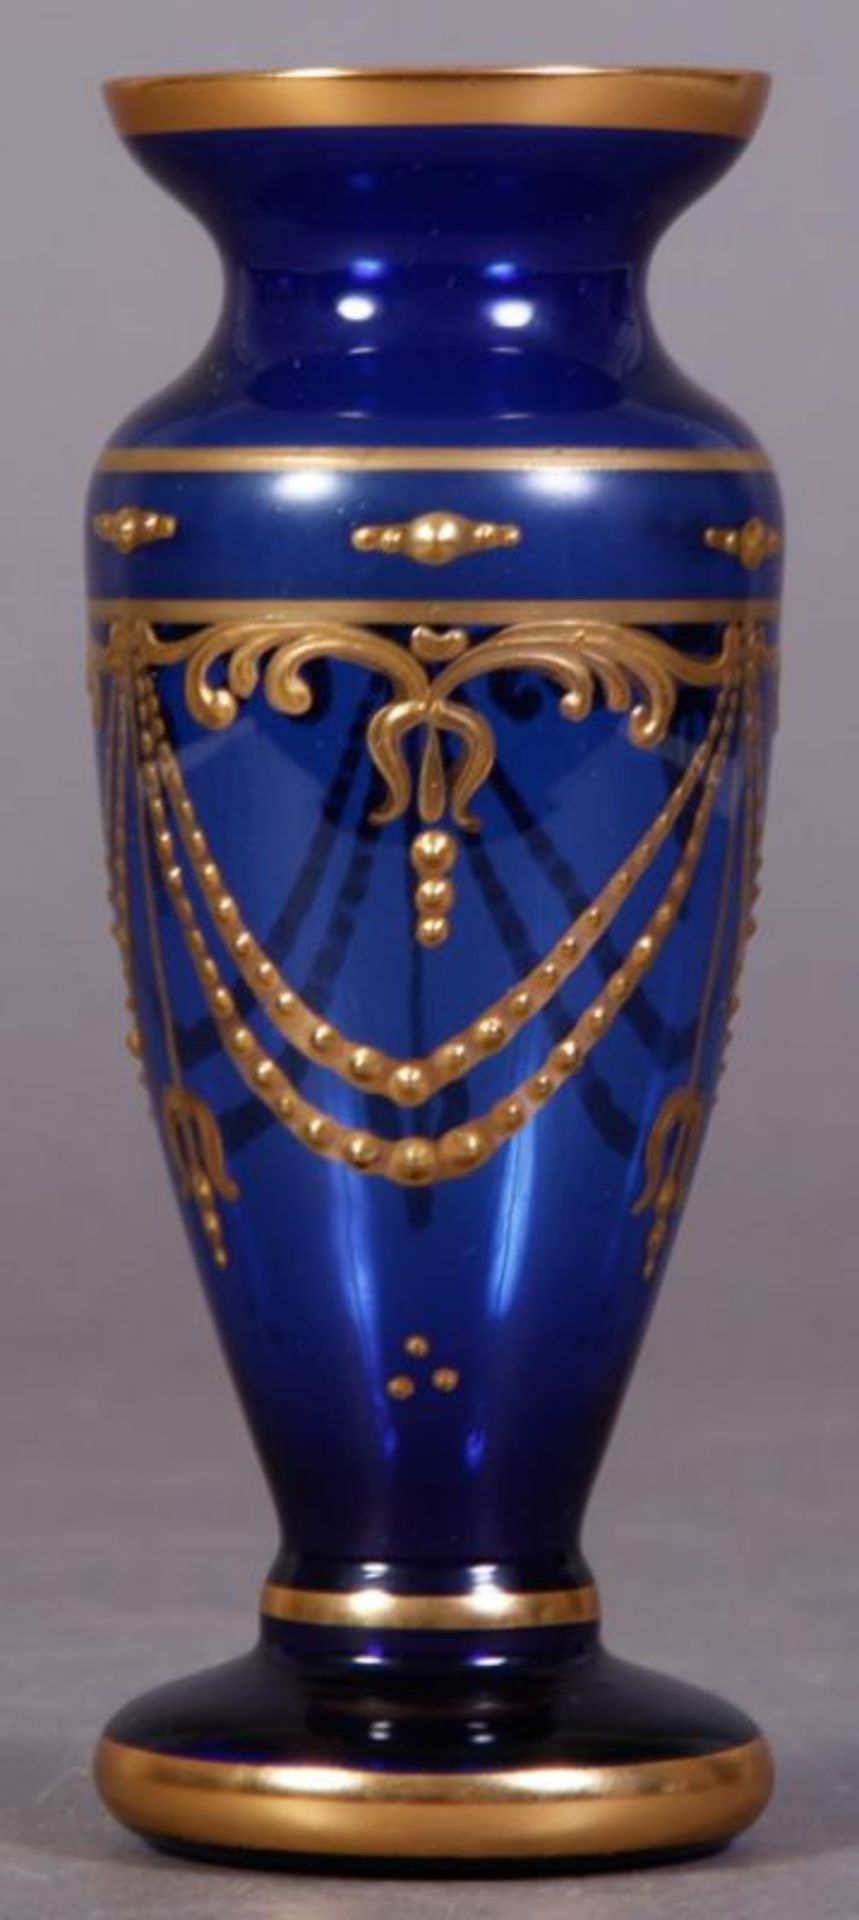 Blaue Tischvase/Glasvase mit reichem Golddekor, um 1900. Höhe 16,5 cm. - Image 4 of 5